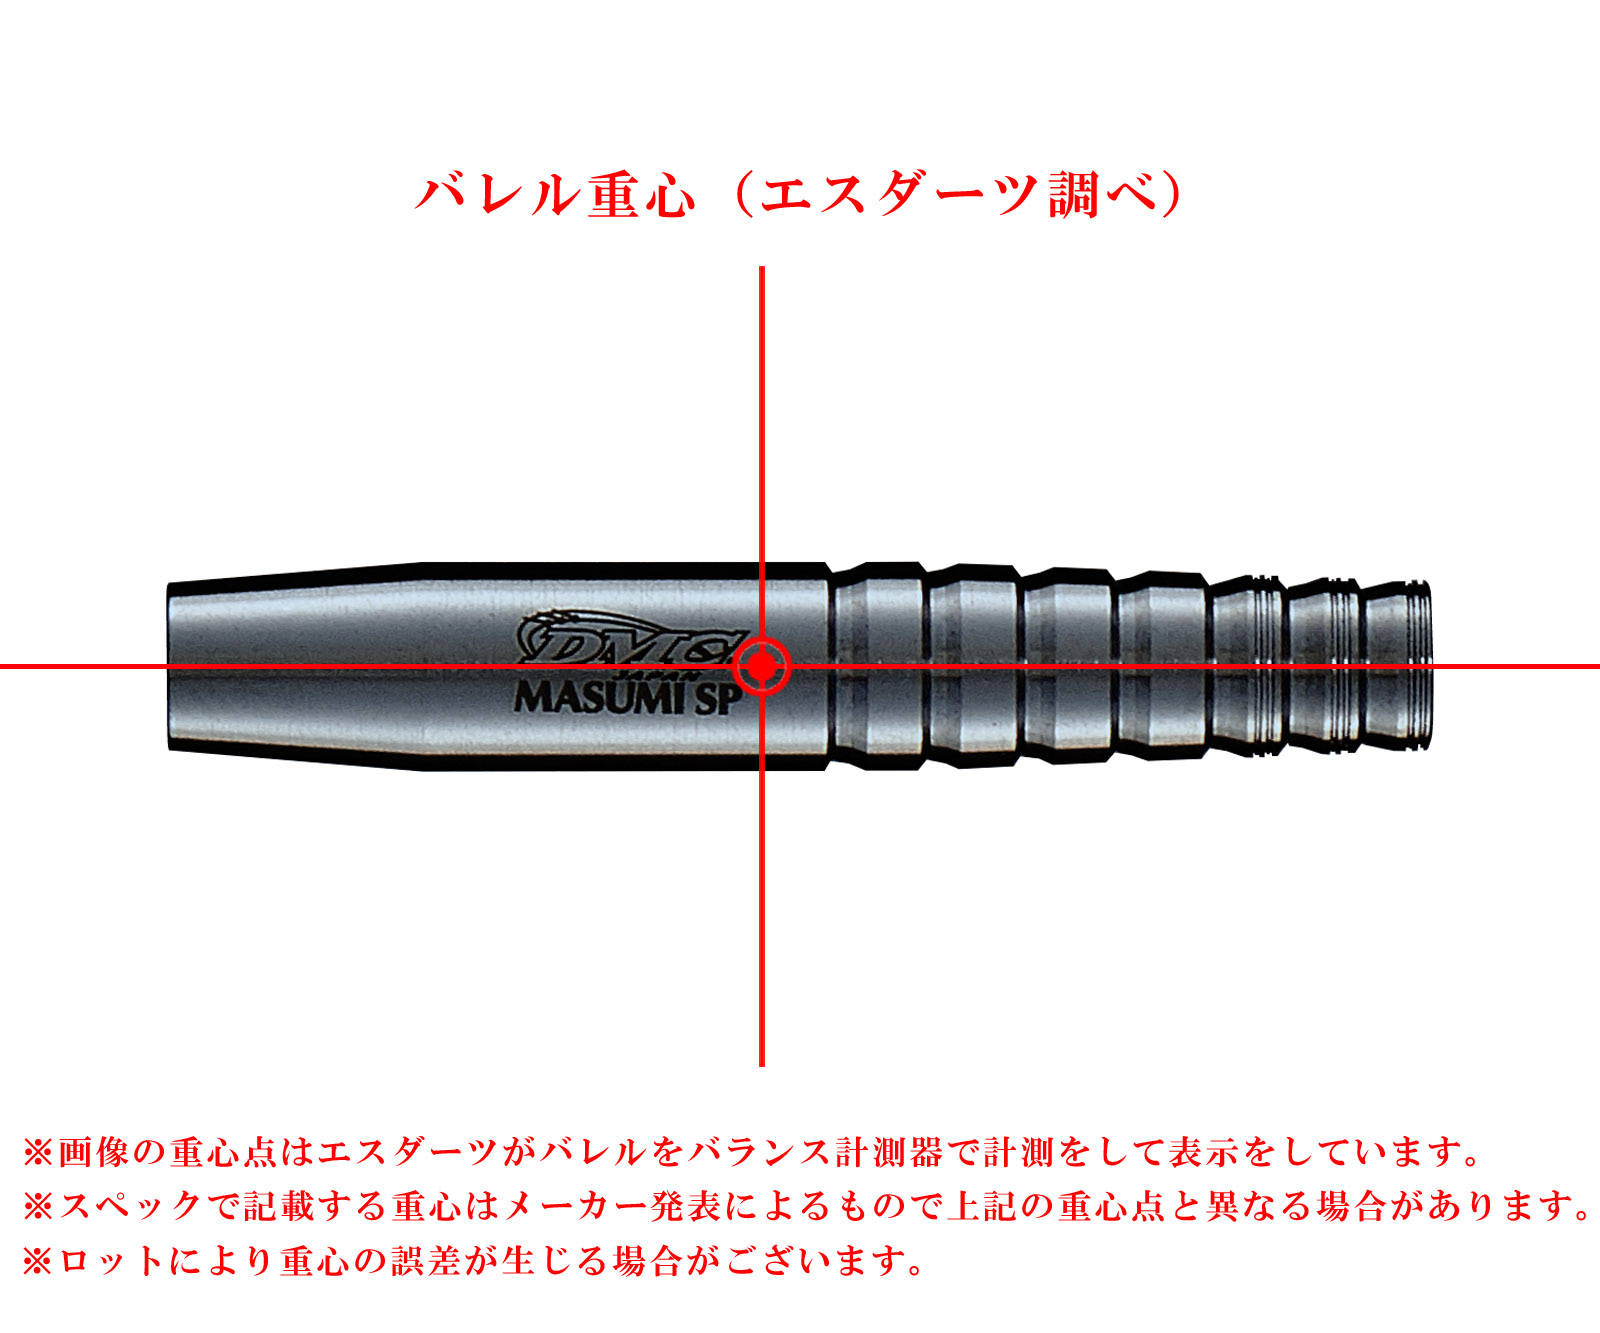 DMC】Sabre MASUMI SP Ver.2 Black Limited Masumi Chino model 2BA 